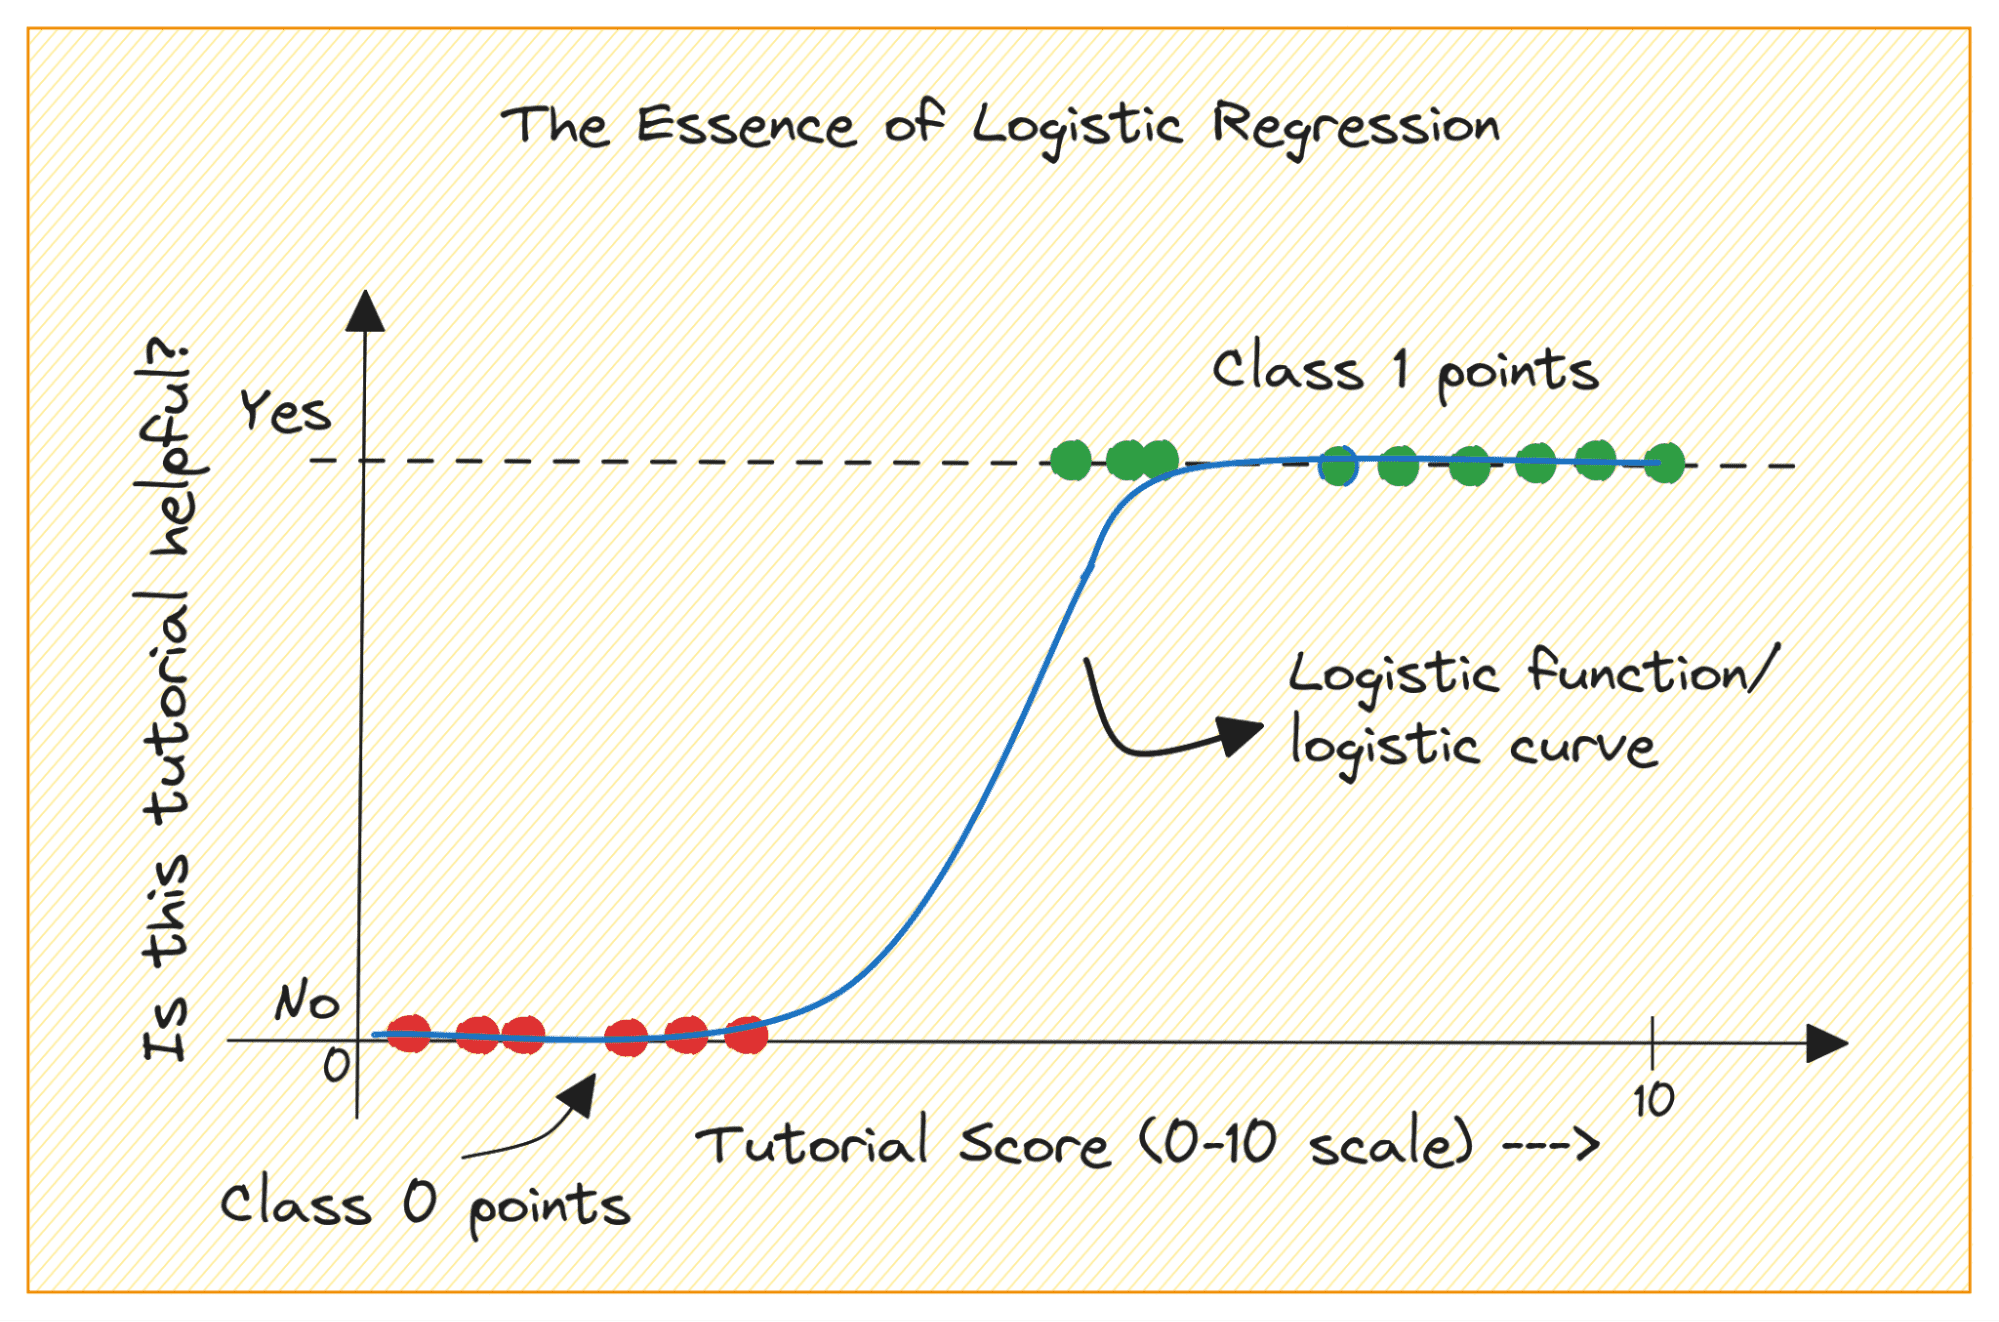 Opbygning af prædiktive modeller: logistisk regression i Python - KDnuggets